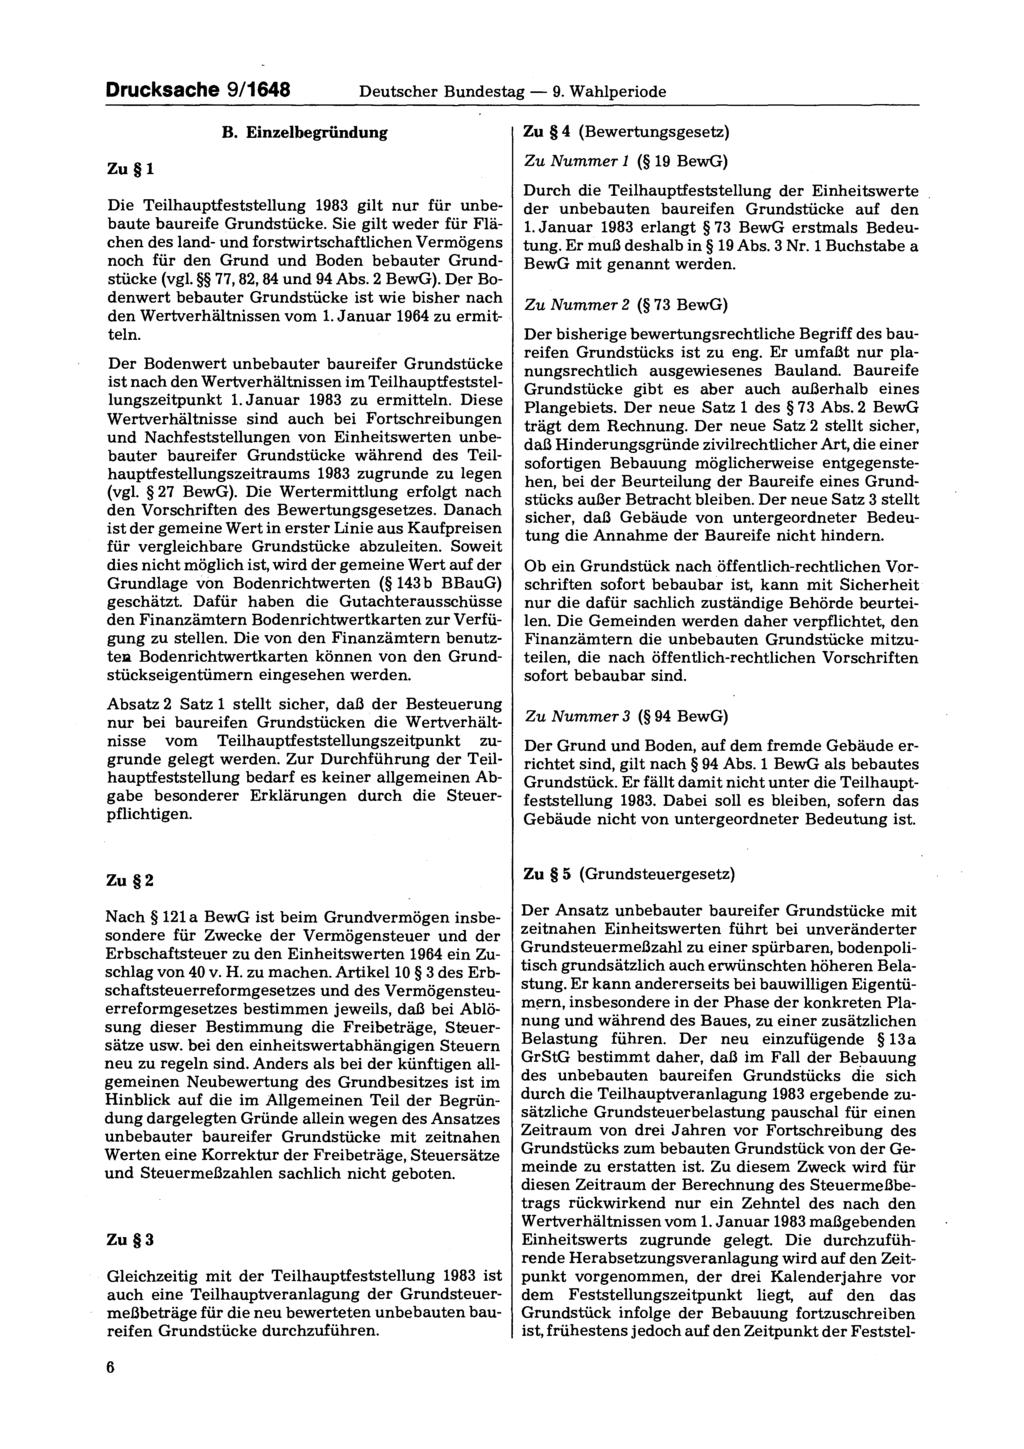 Drucksache 9/1648 Deutscher Bundestag 9. Wahlperiode Zu 1 B. Einzelbegründung Die Teilhauptfeststellung 1983 gilt nur für unbebaute baureife Grundstücke.